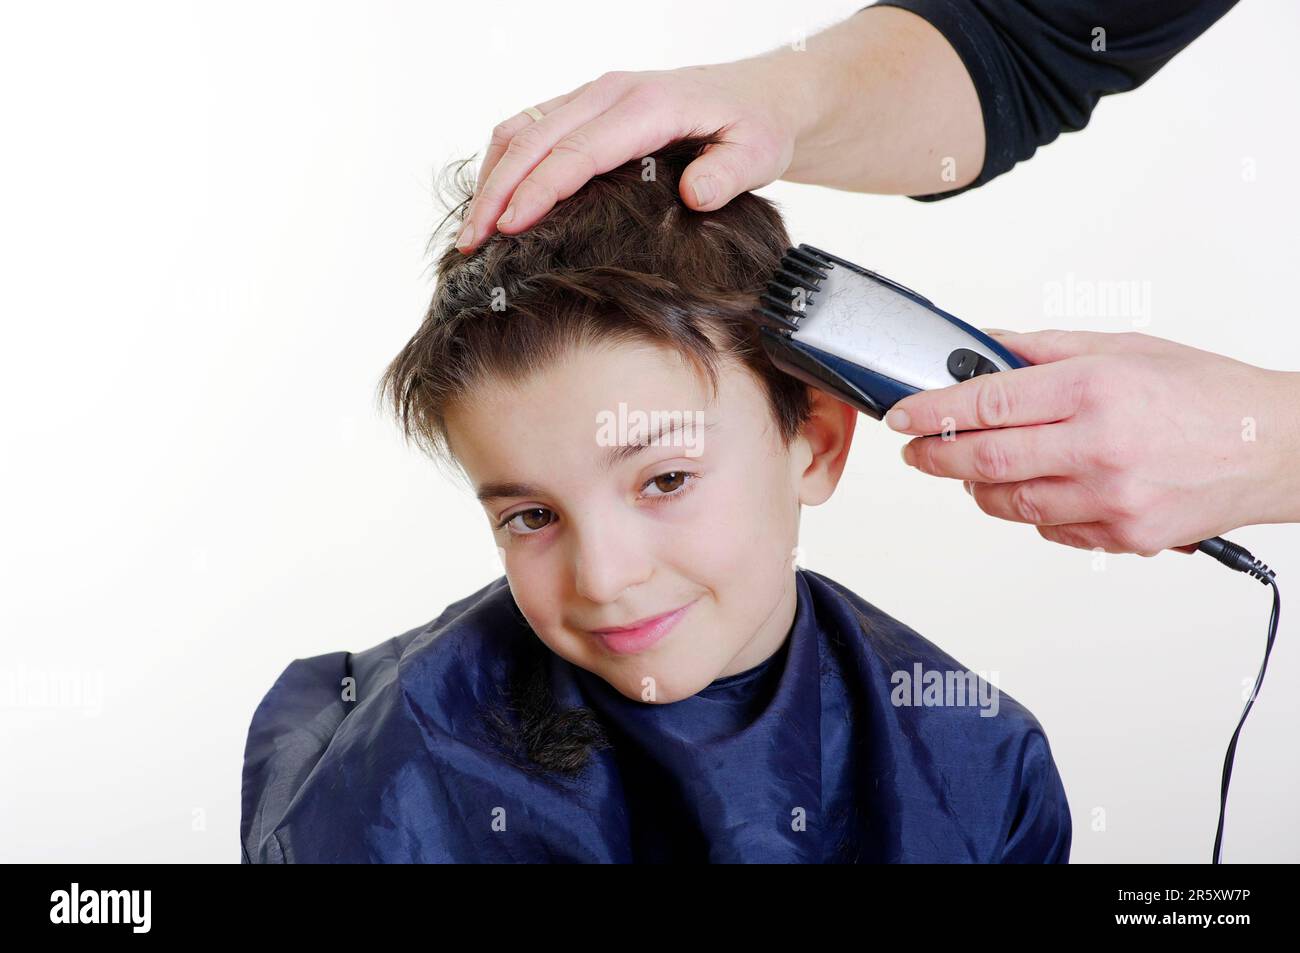 Chico se corta el pelo con un cortapelos, cortar el pelo Foto de stock